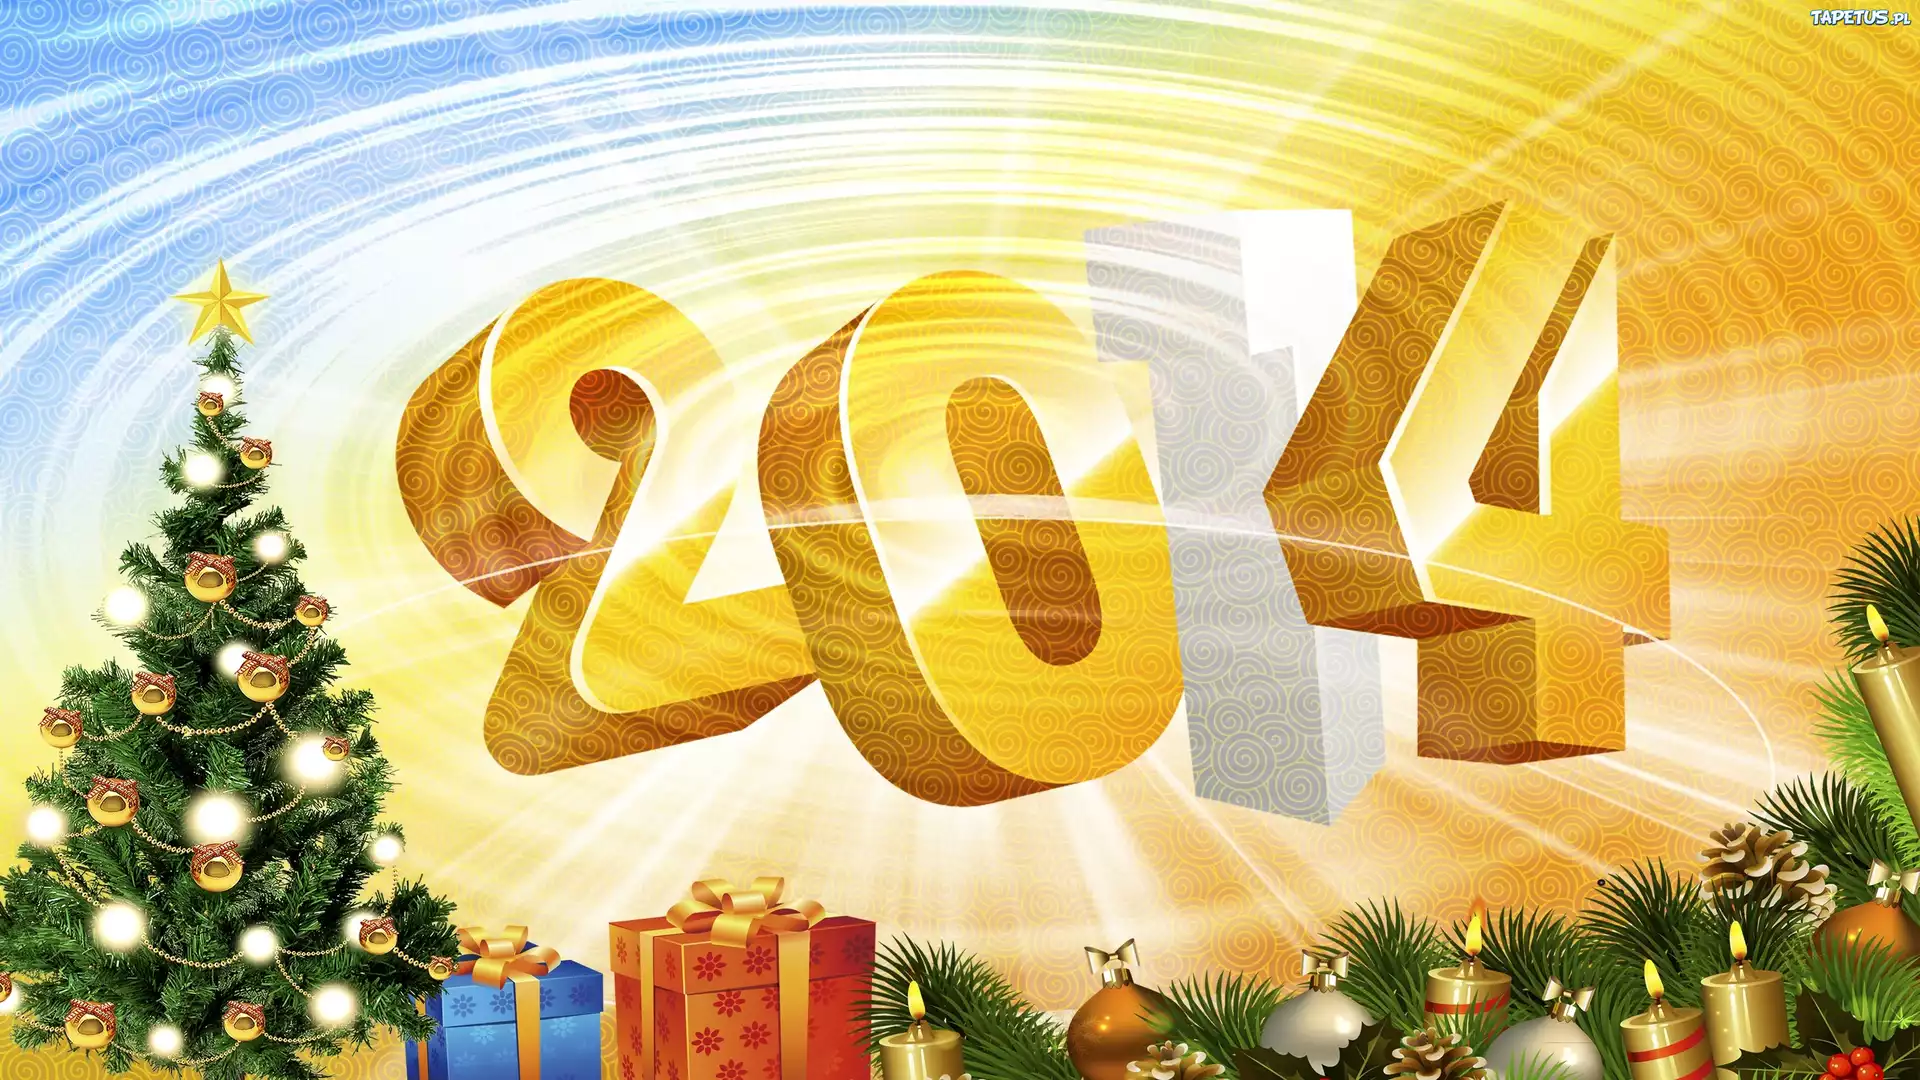 Новый год 2014 цены